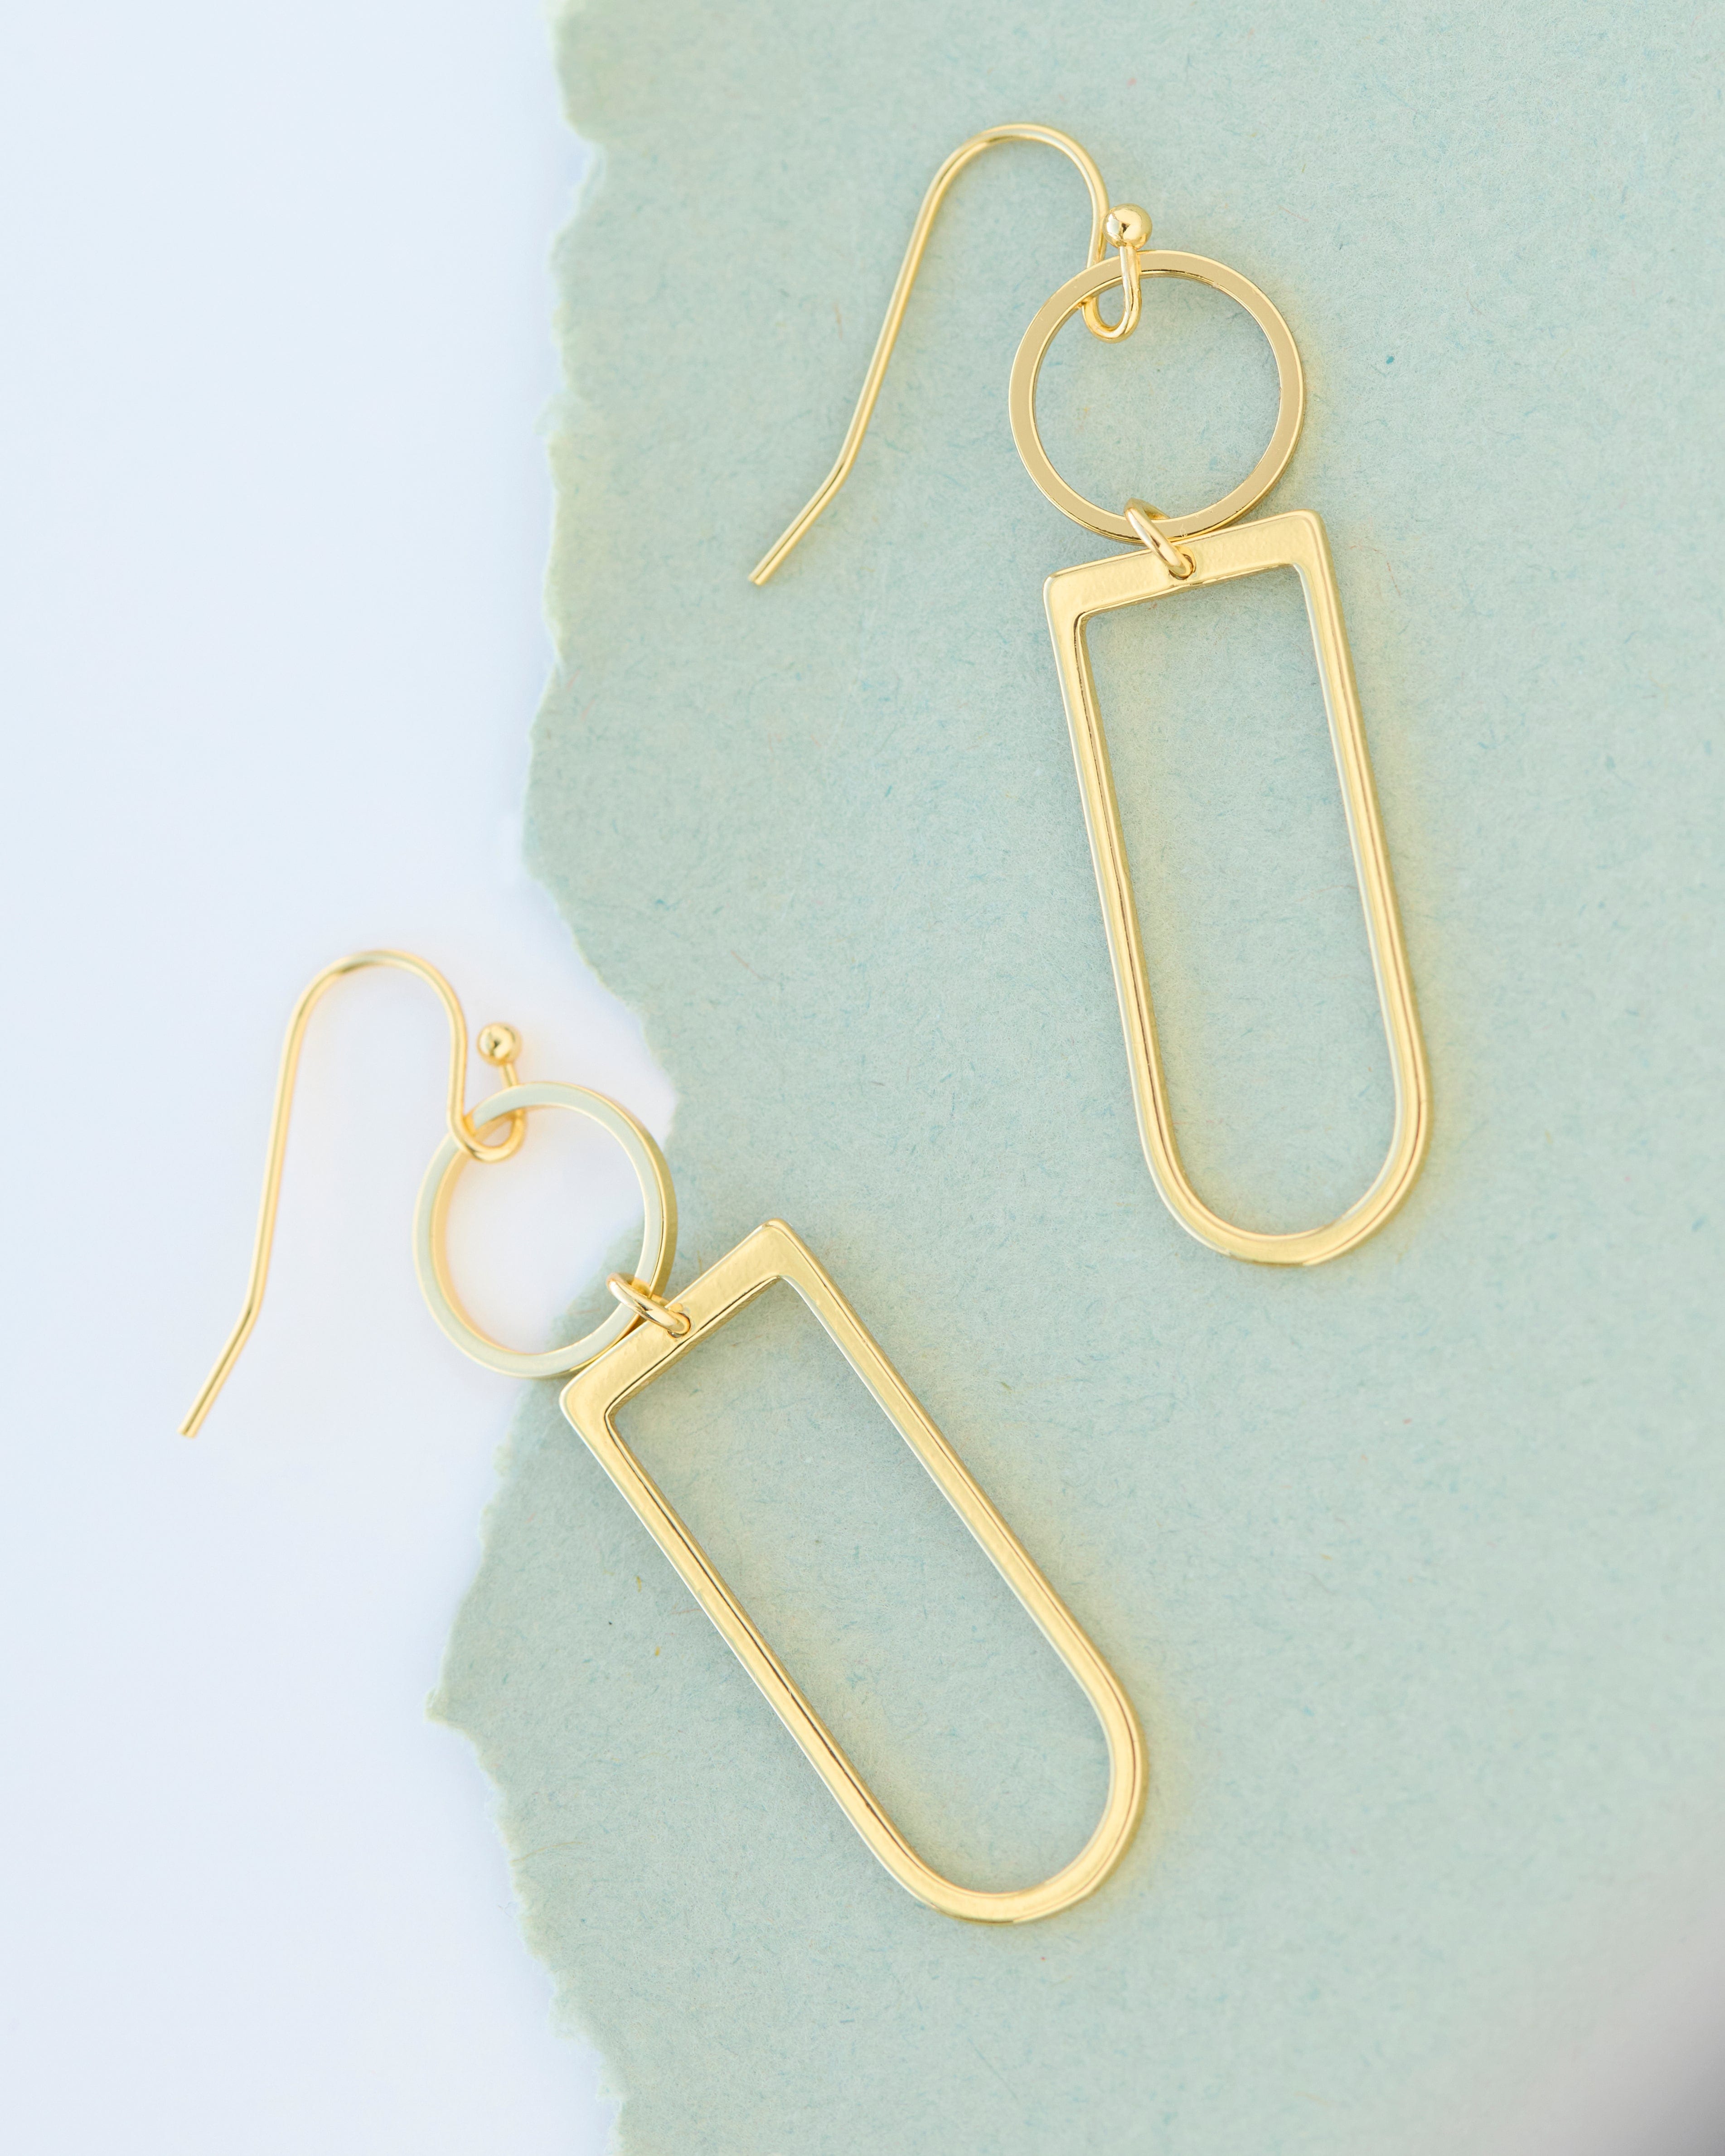 Gold dangle earrings in geometric shapes.